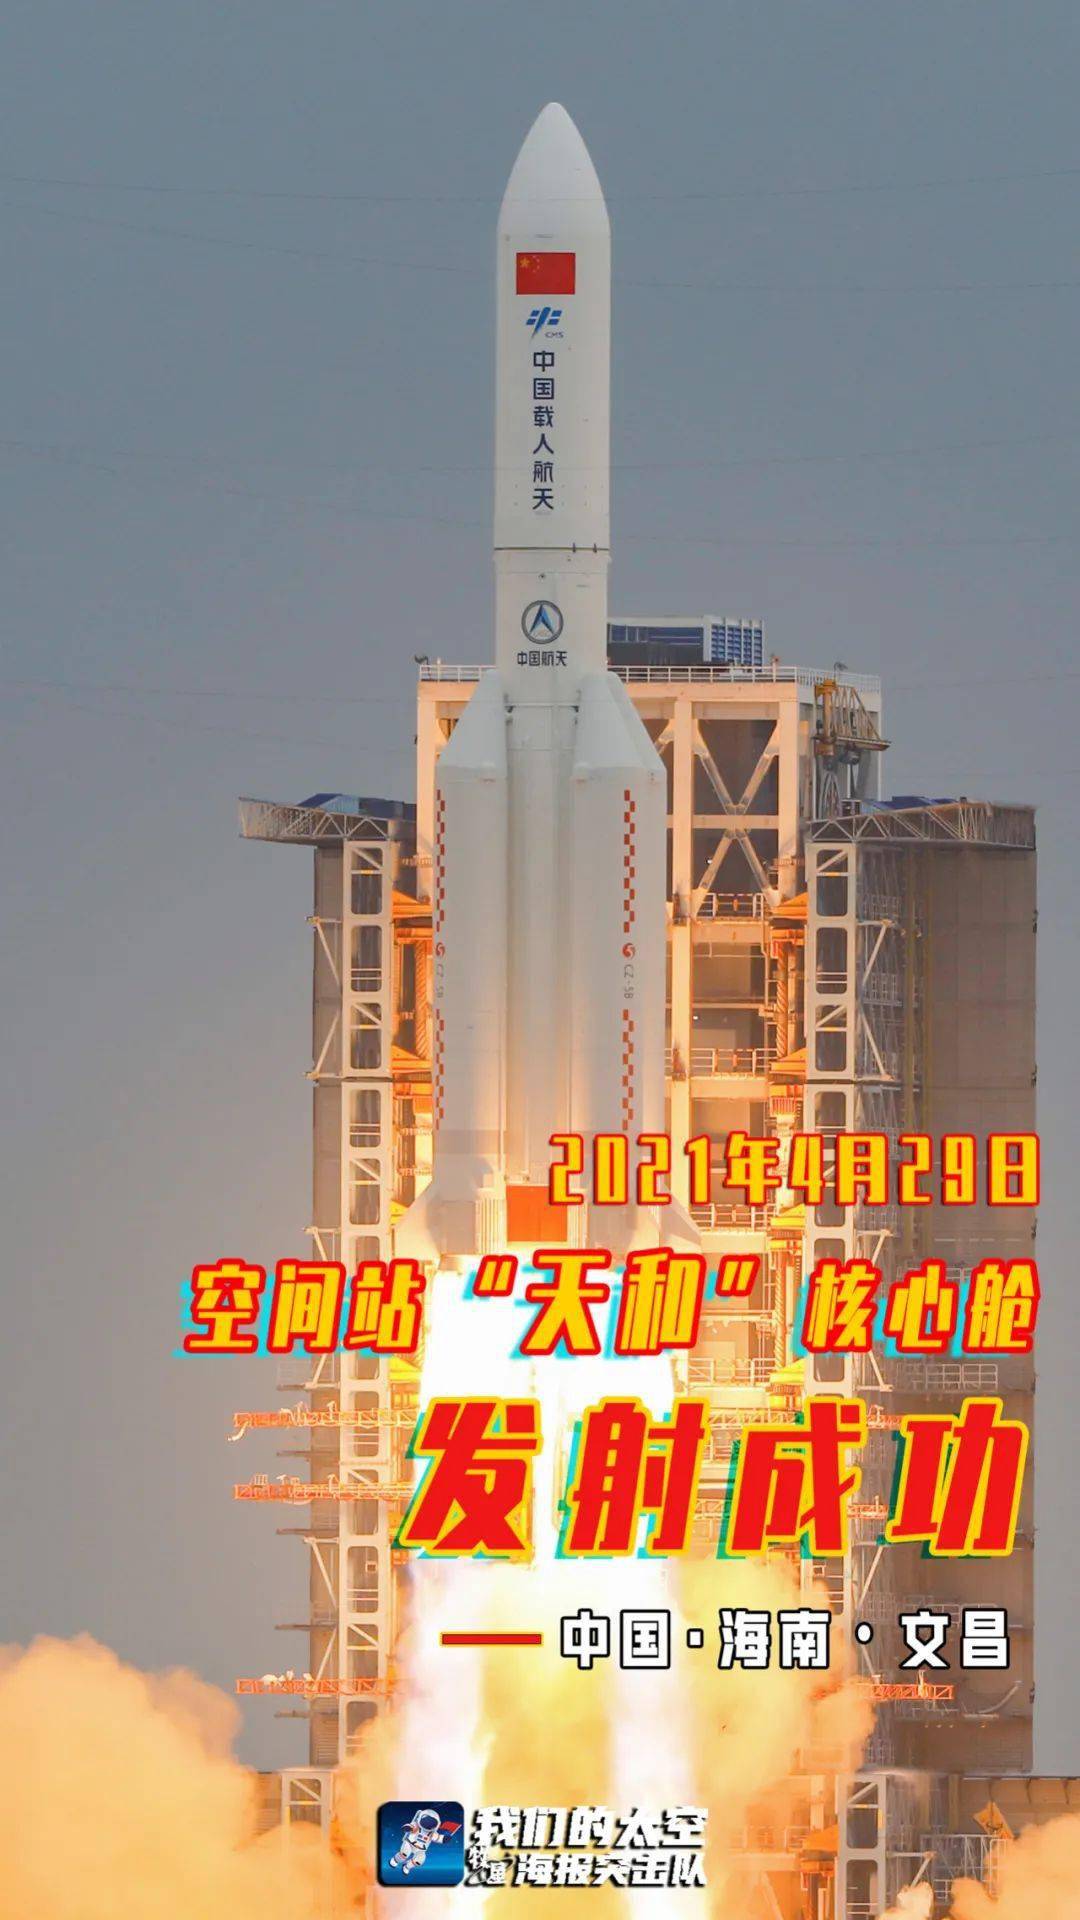 空间站天和核心舱发射任务取得圆满成功——中国空间站在轨组装建造